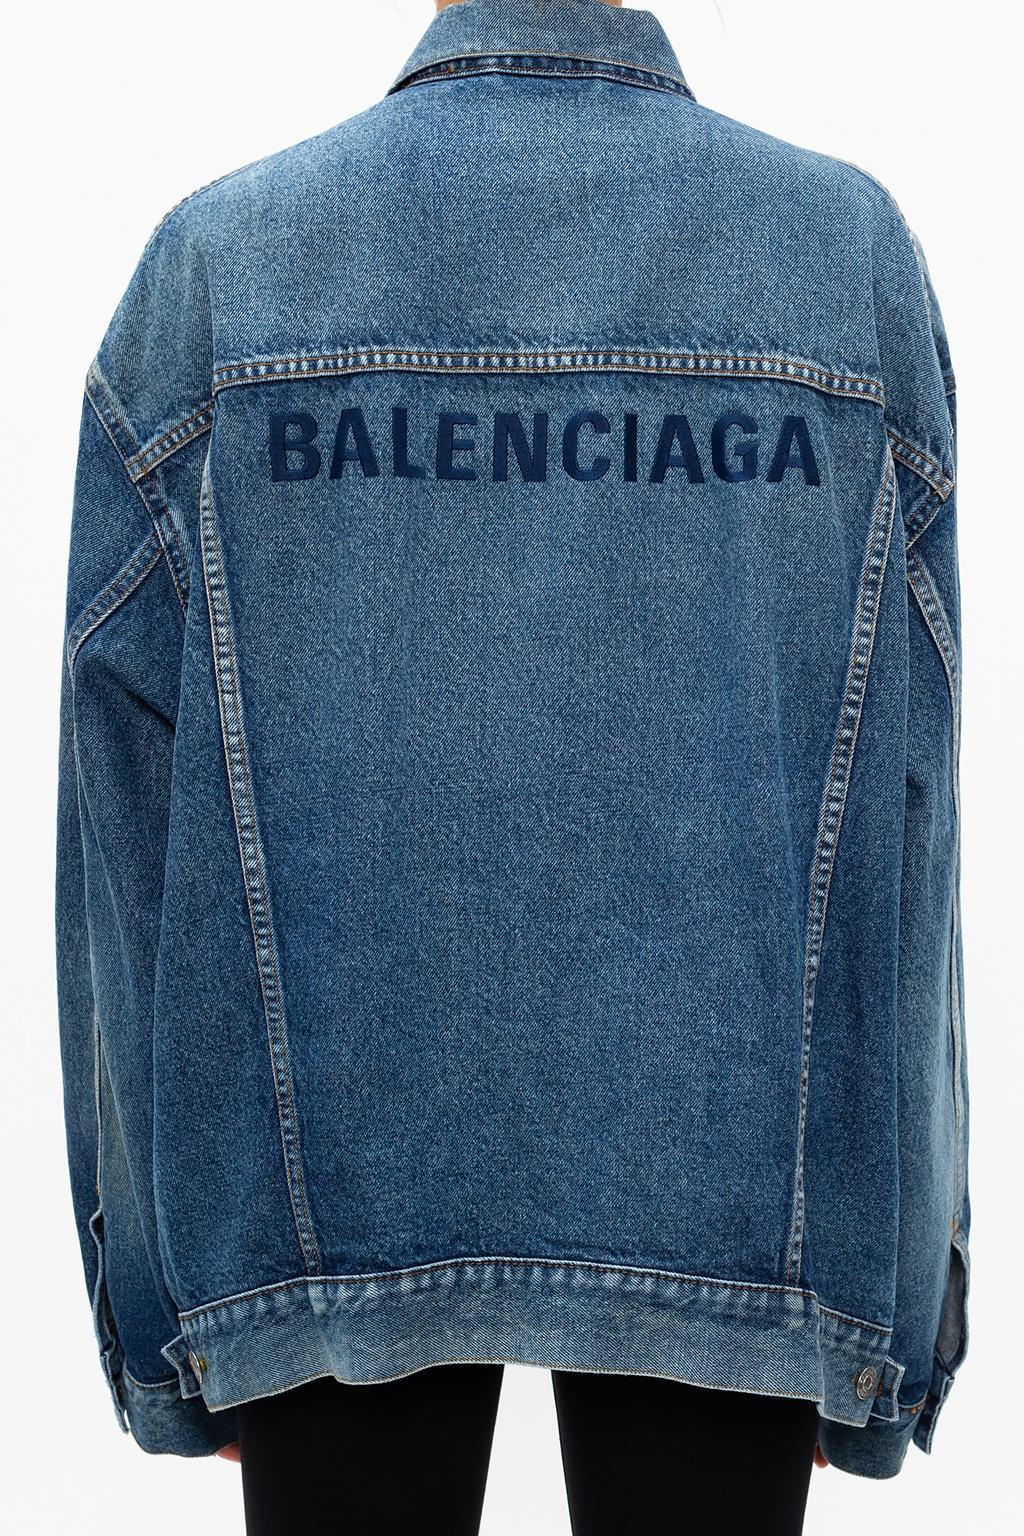 Balenciaga Denim Jacket With Logo in Blue | Lyst